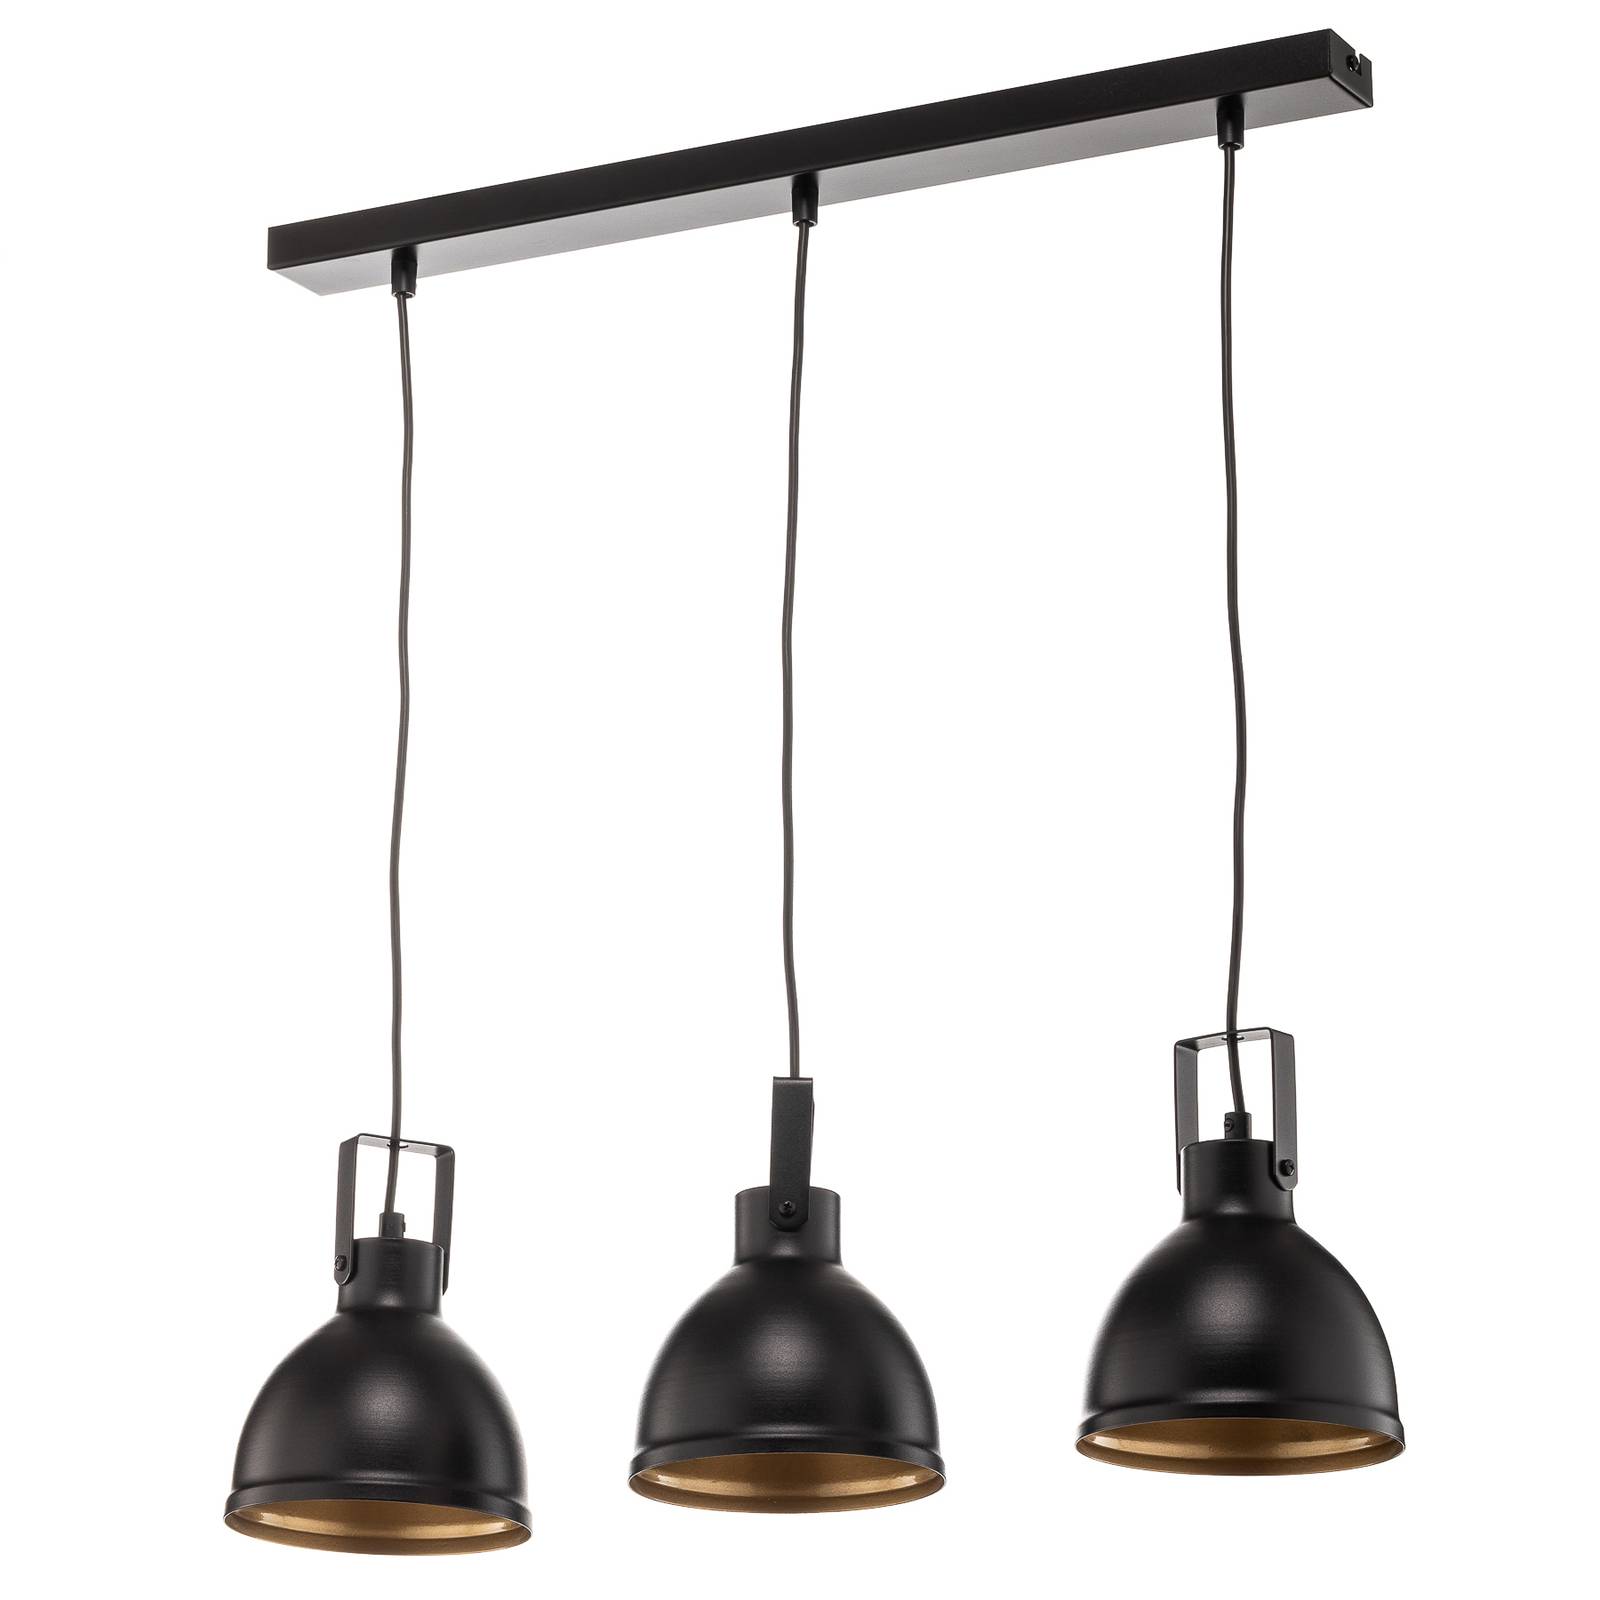 Trial függő lámpa, 3 izzós egyenes, fekete/arany